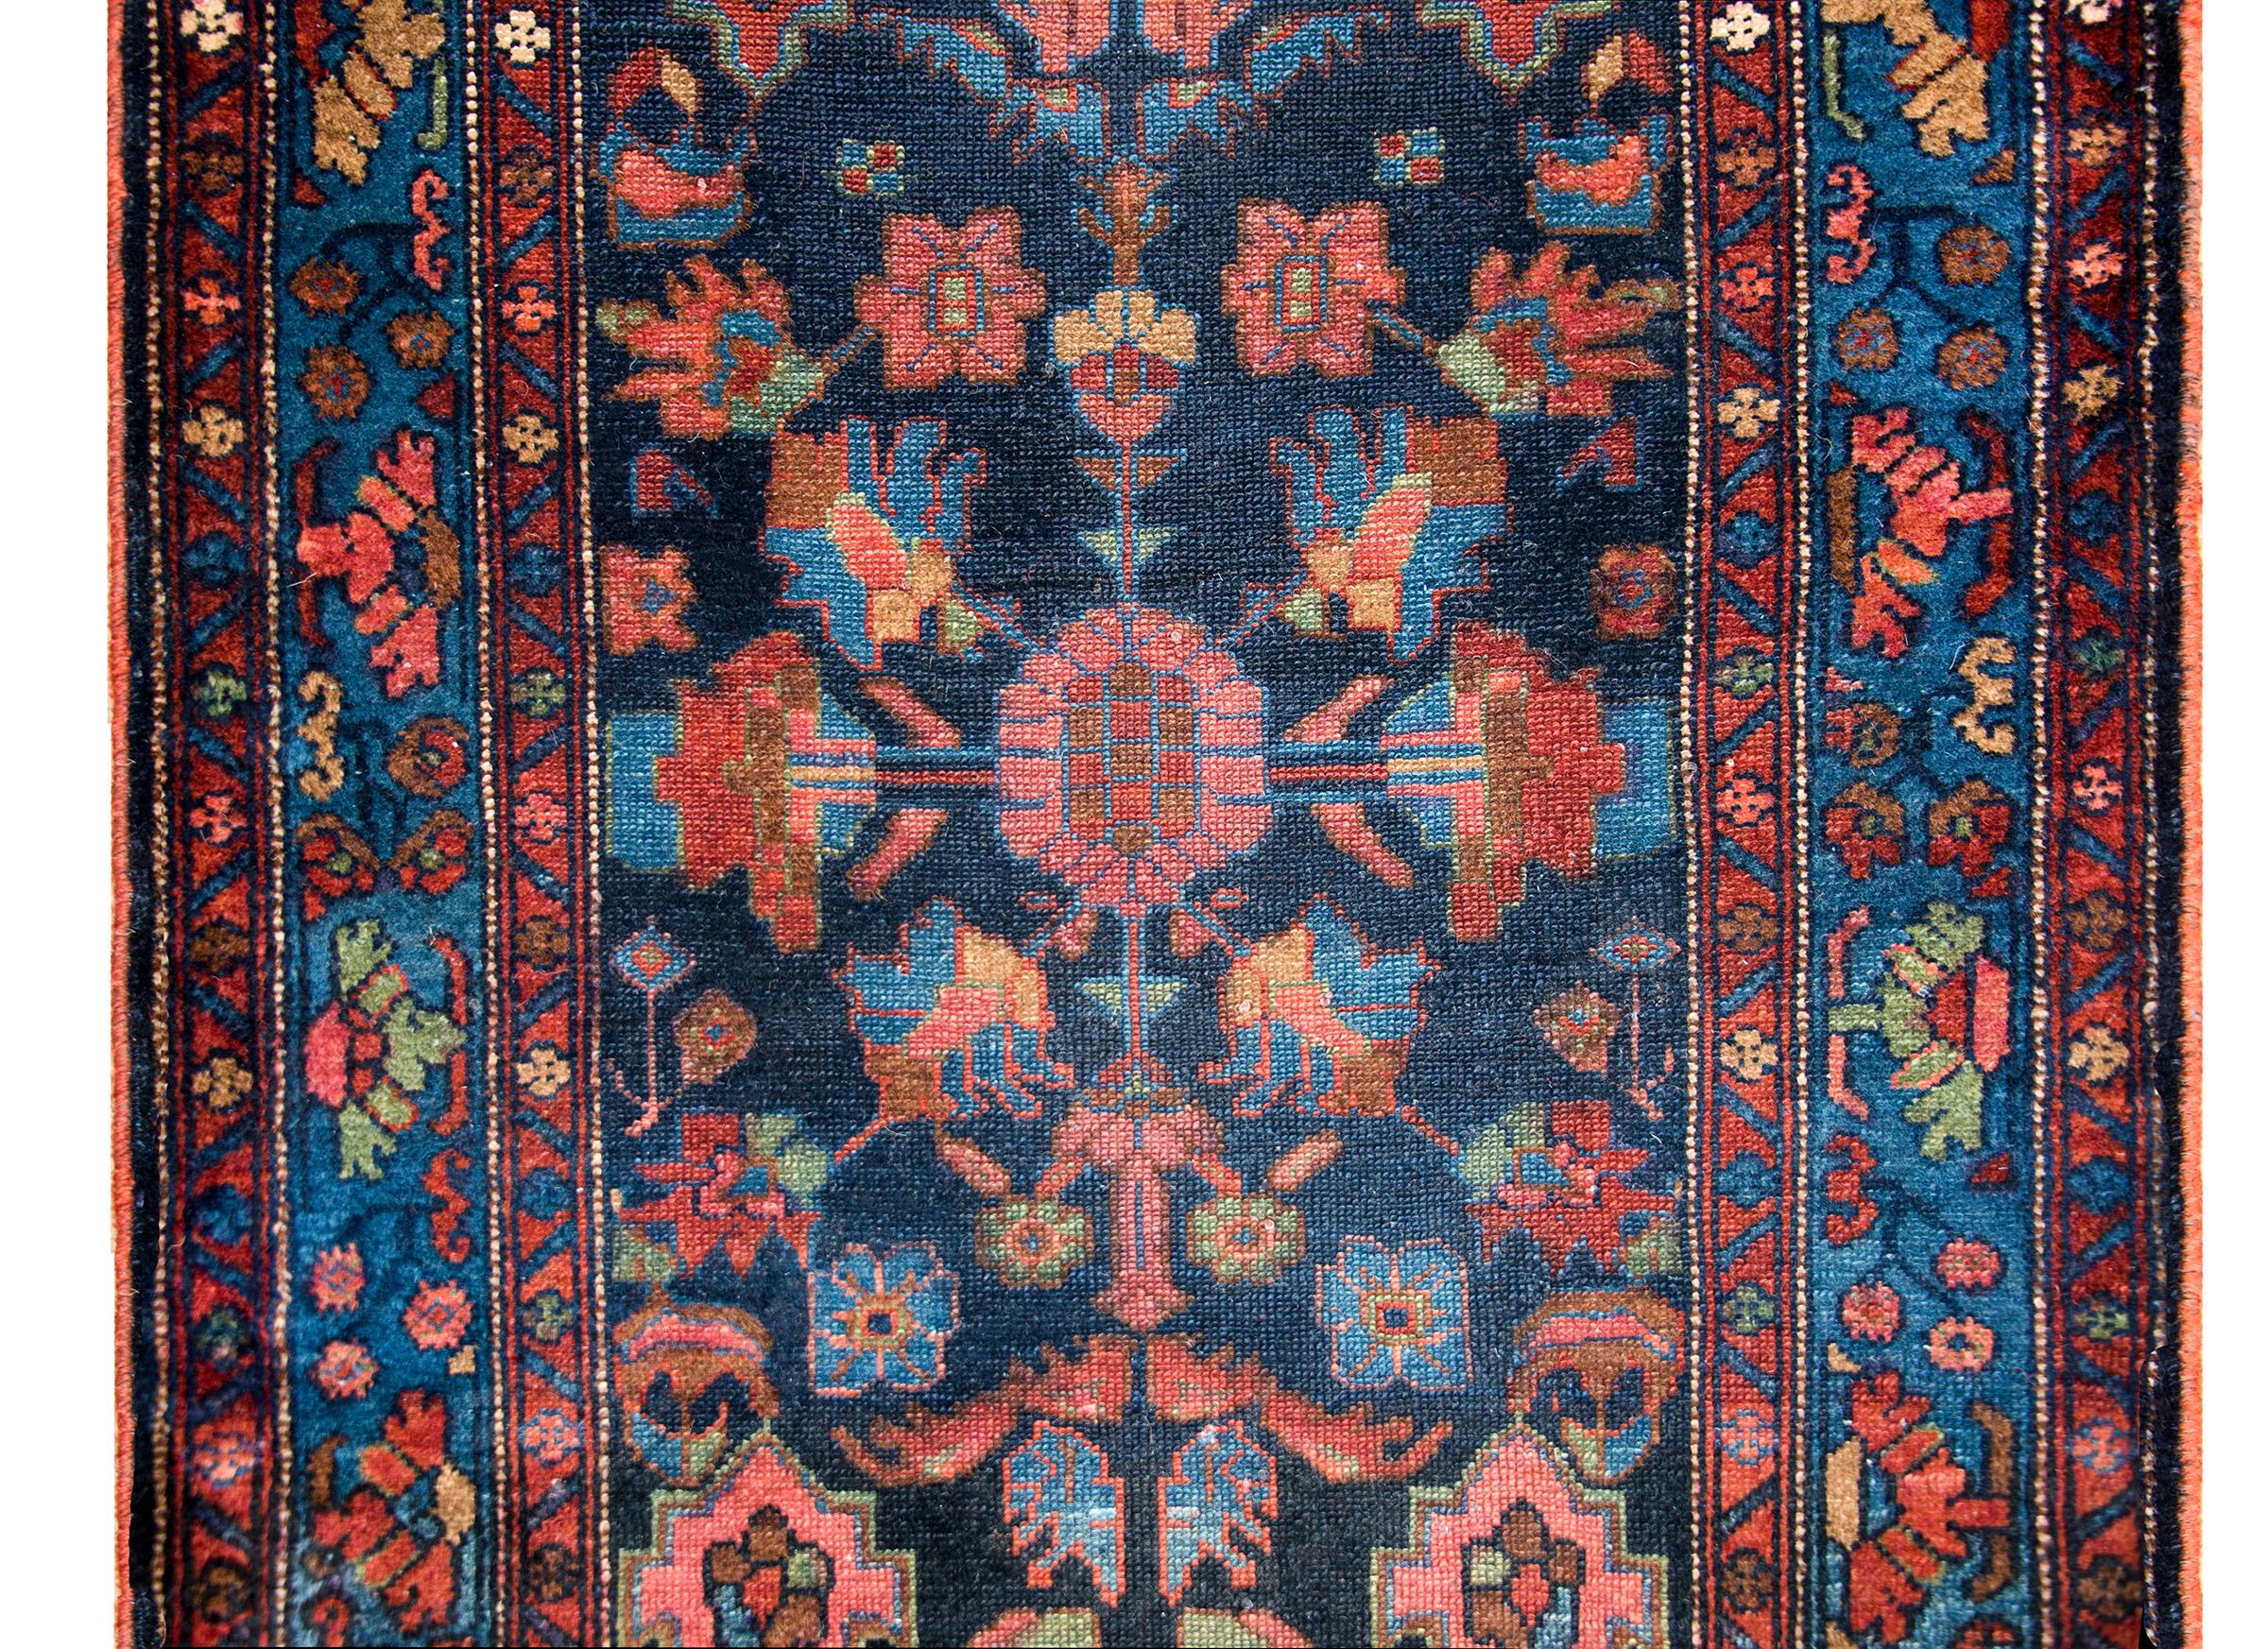 Un incroyable chemin de table persan du début du 20e siècle avec un incroyable motif floral miroir sur toute la surface, à petite et grande échelle, entouré d'une simple bordure avec une bande centrale à motif floral flanquée d'une paire de petites